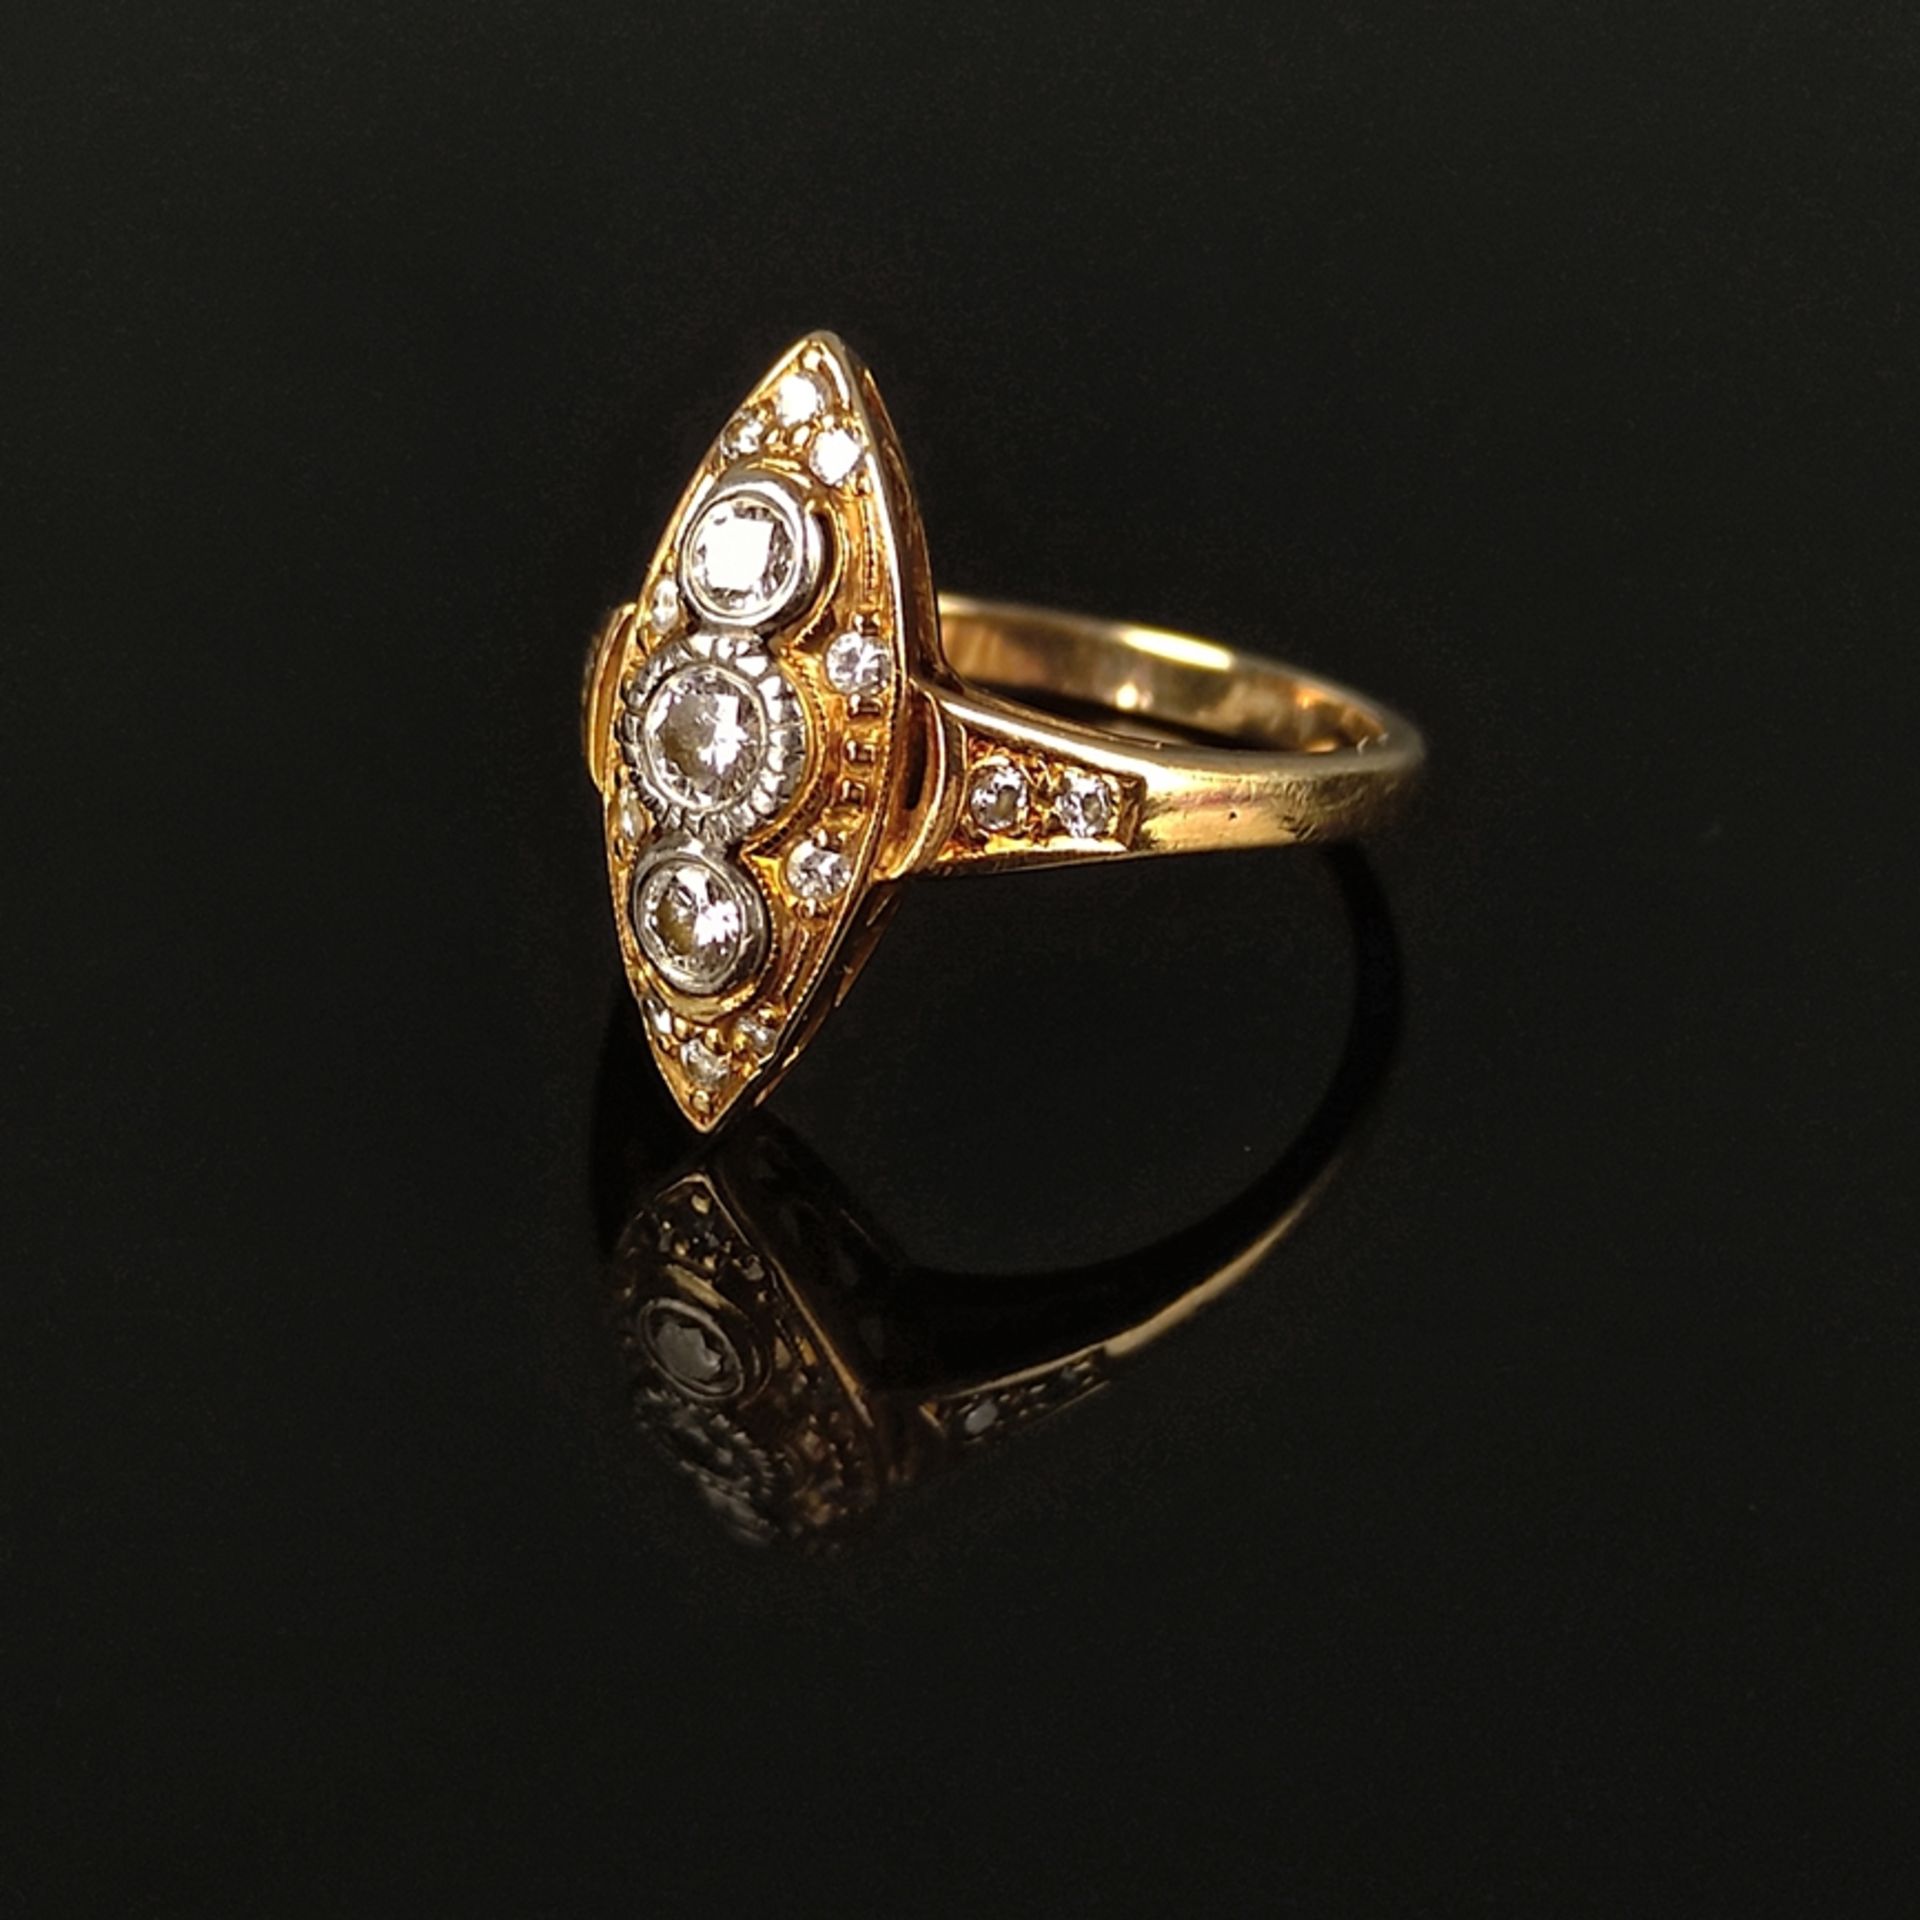 Diamant-Ring, 585/14K Gelb-/Weißgold (punziert), Gesamtgewicht 3,81g, mittig drei Brillanten von zu